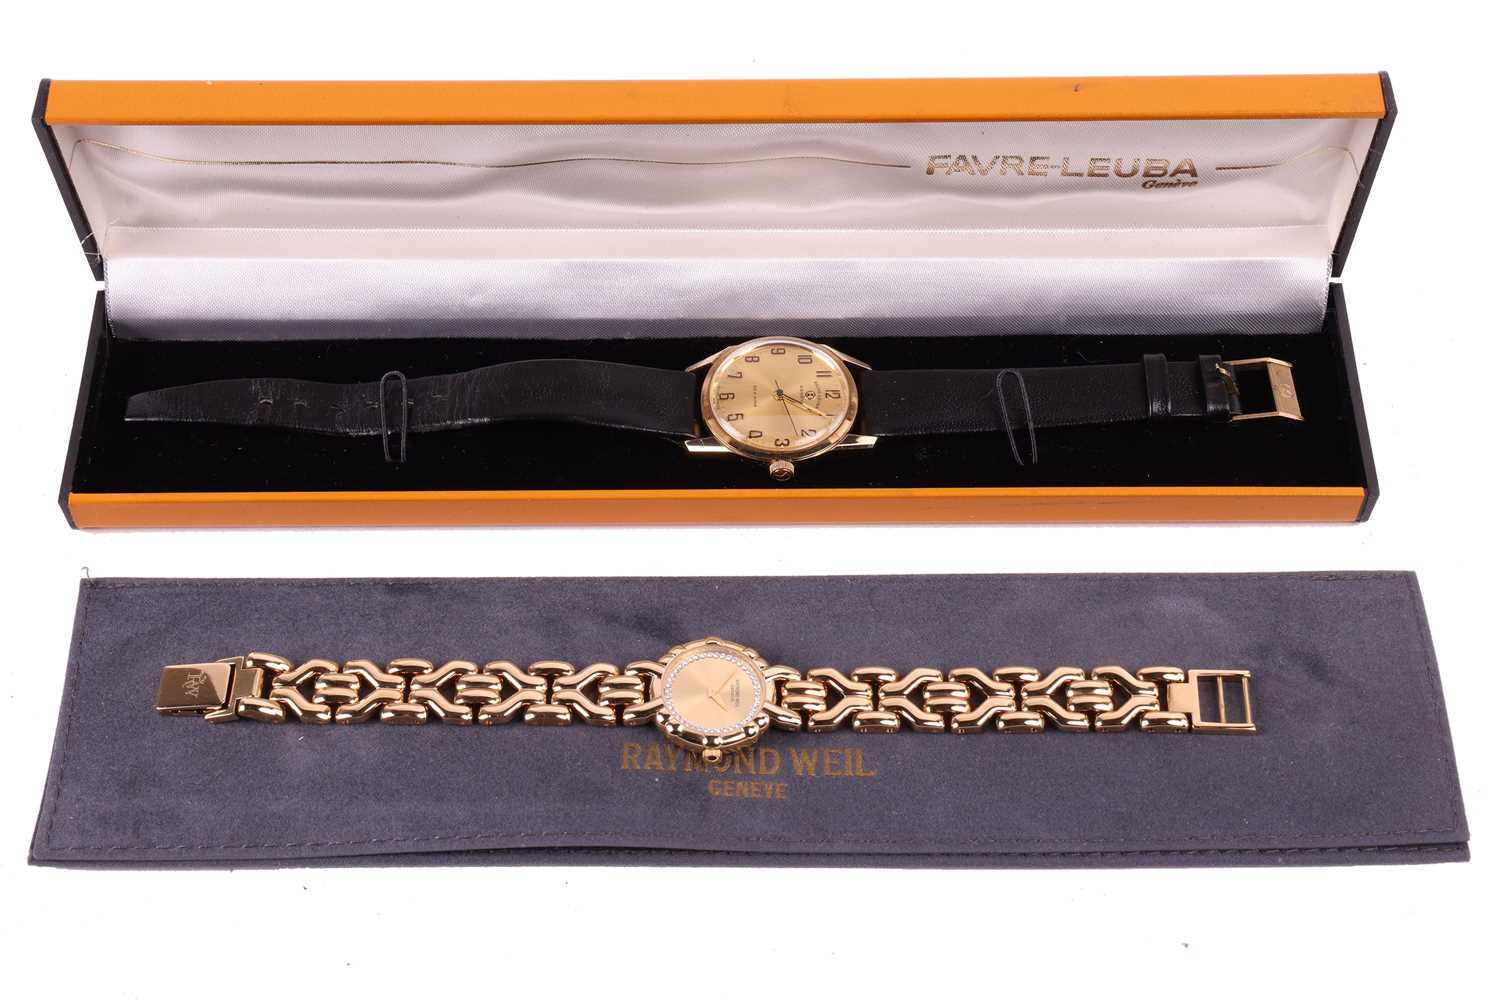 A gents Favre Leuba watch and a Raymond Weil lady's dress watch featuring A Favre Leuba Genève hand- - Image 6 of 8